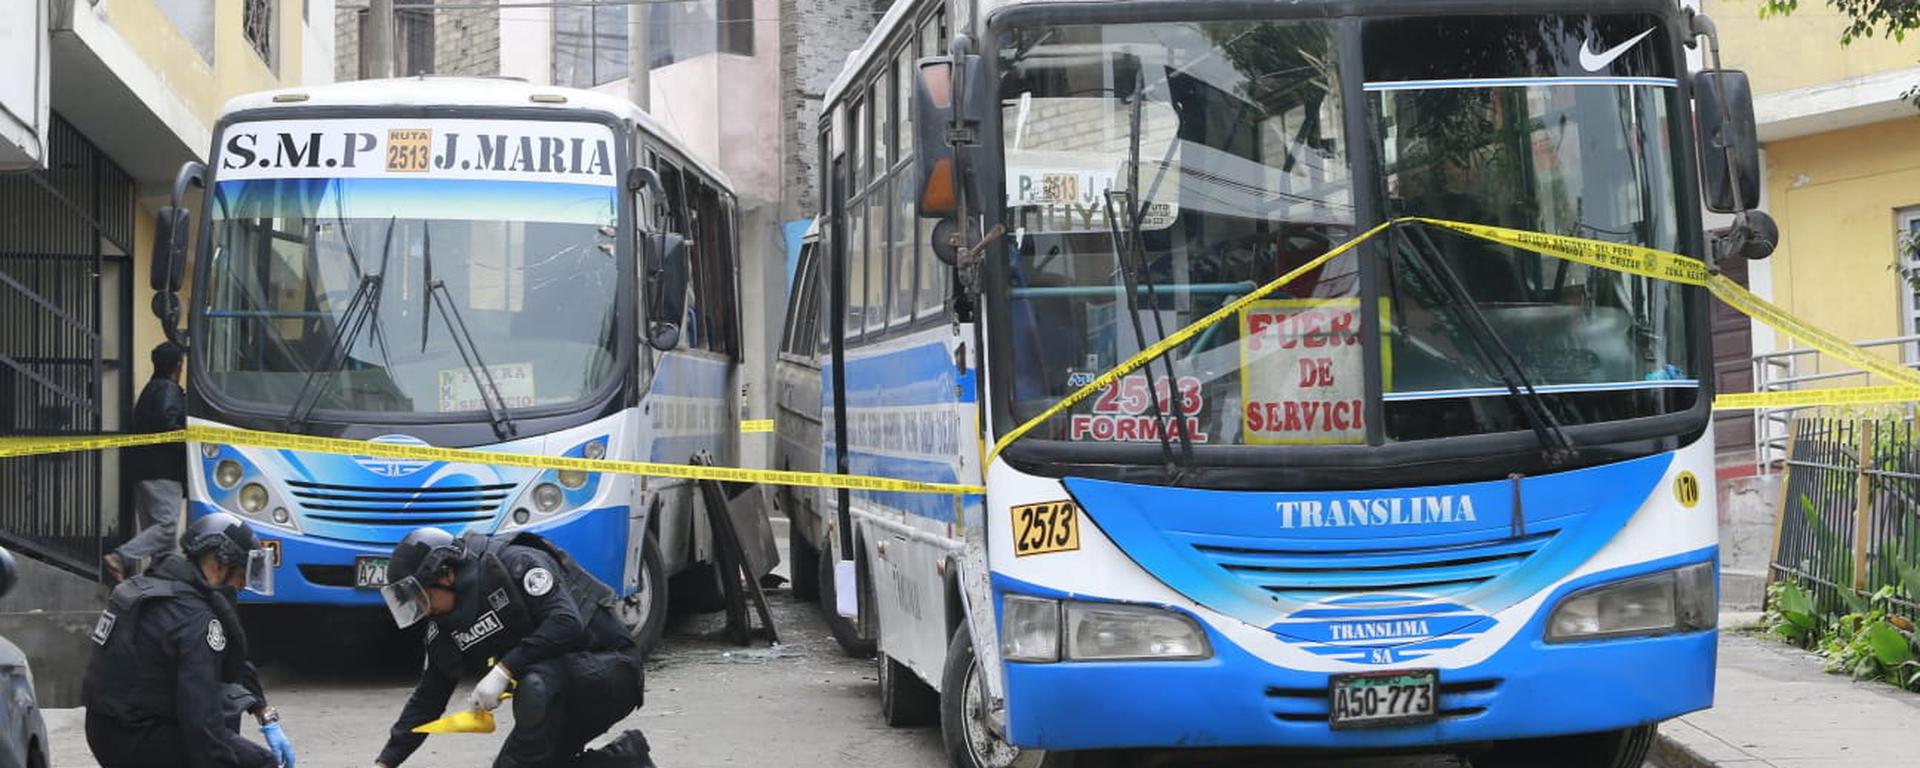 Detonan explosivo contra buses: detalles del ataque a empresa de transporte y la modalidad de extorsión que estaría iniciando